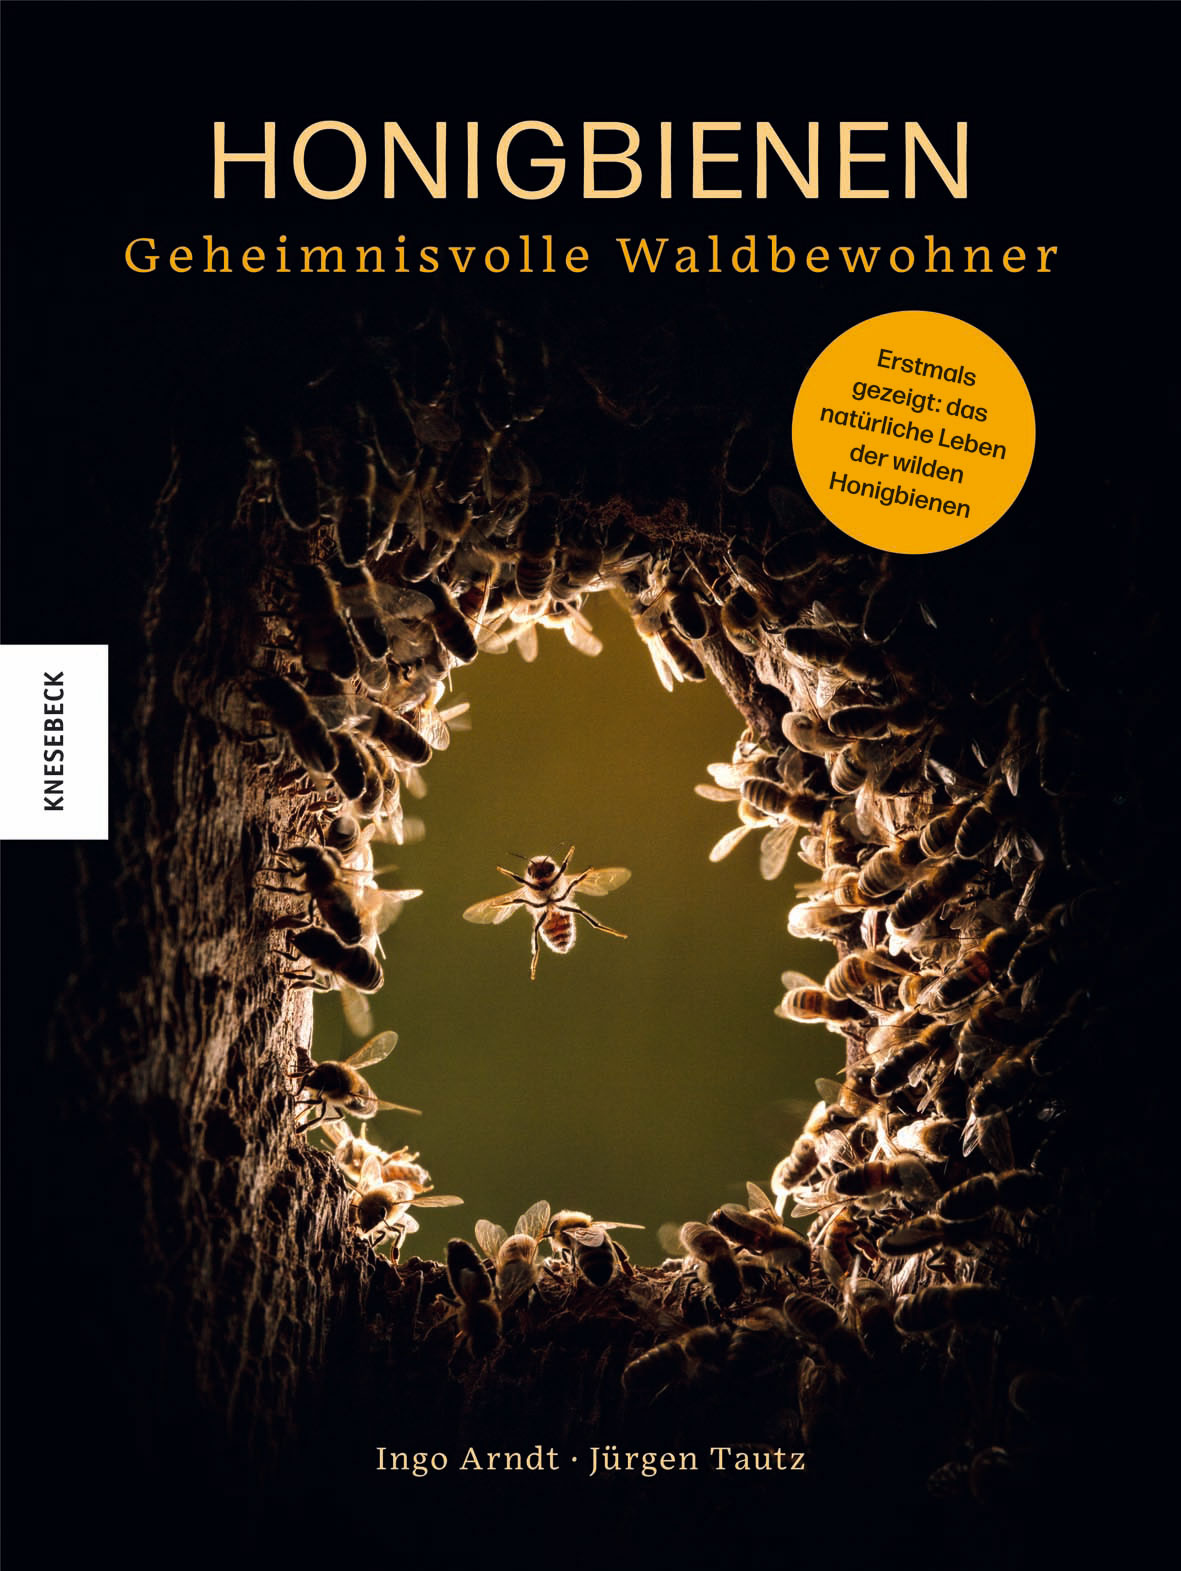 You are currently viewing Rezension: Honigbienen – Geheimnisvolle Waldbewohner